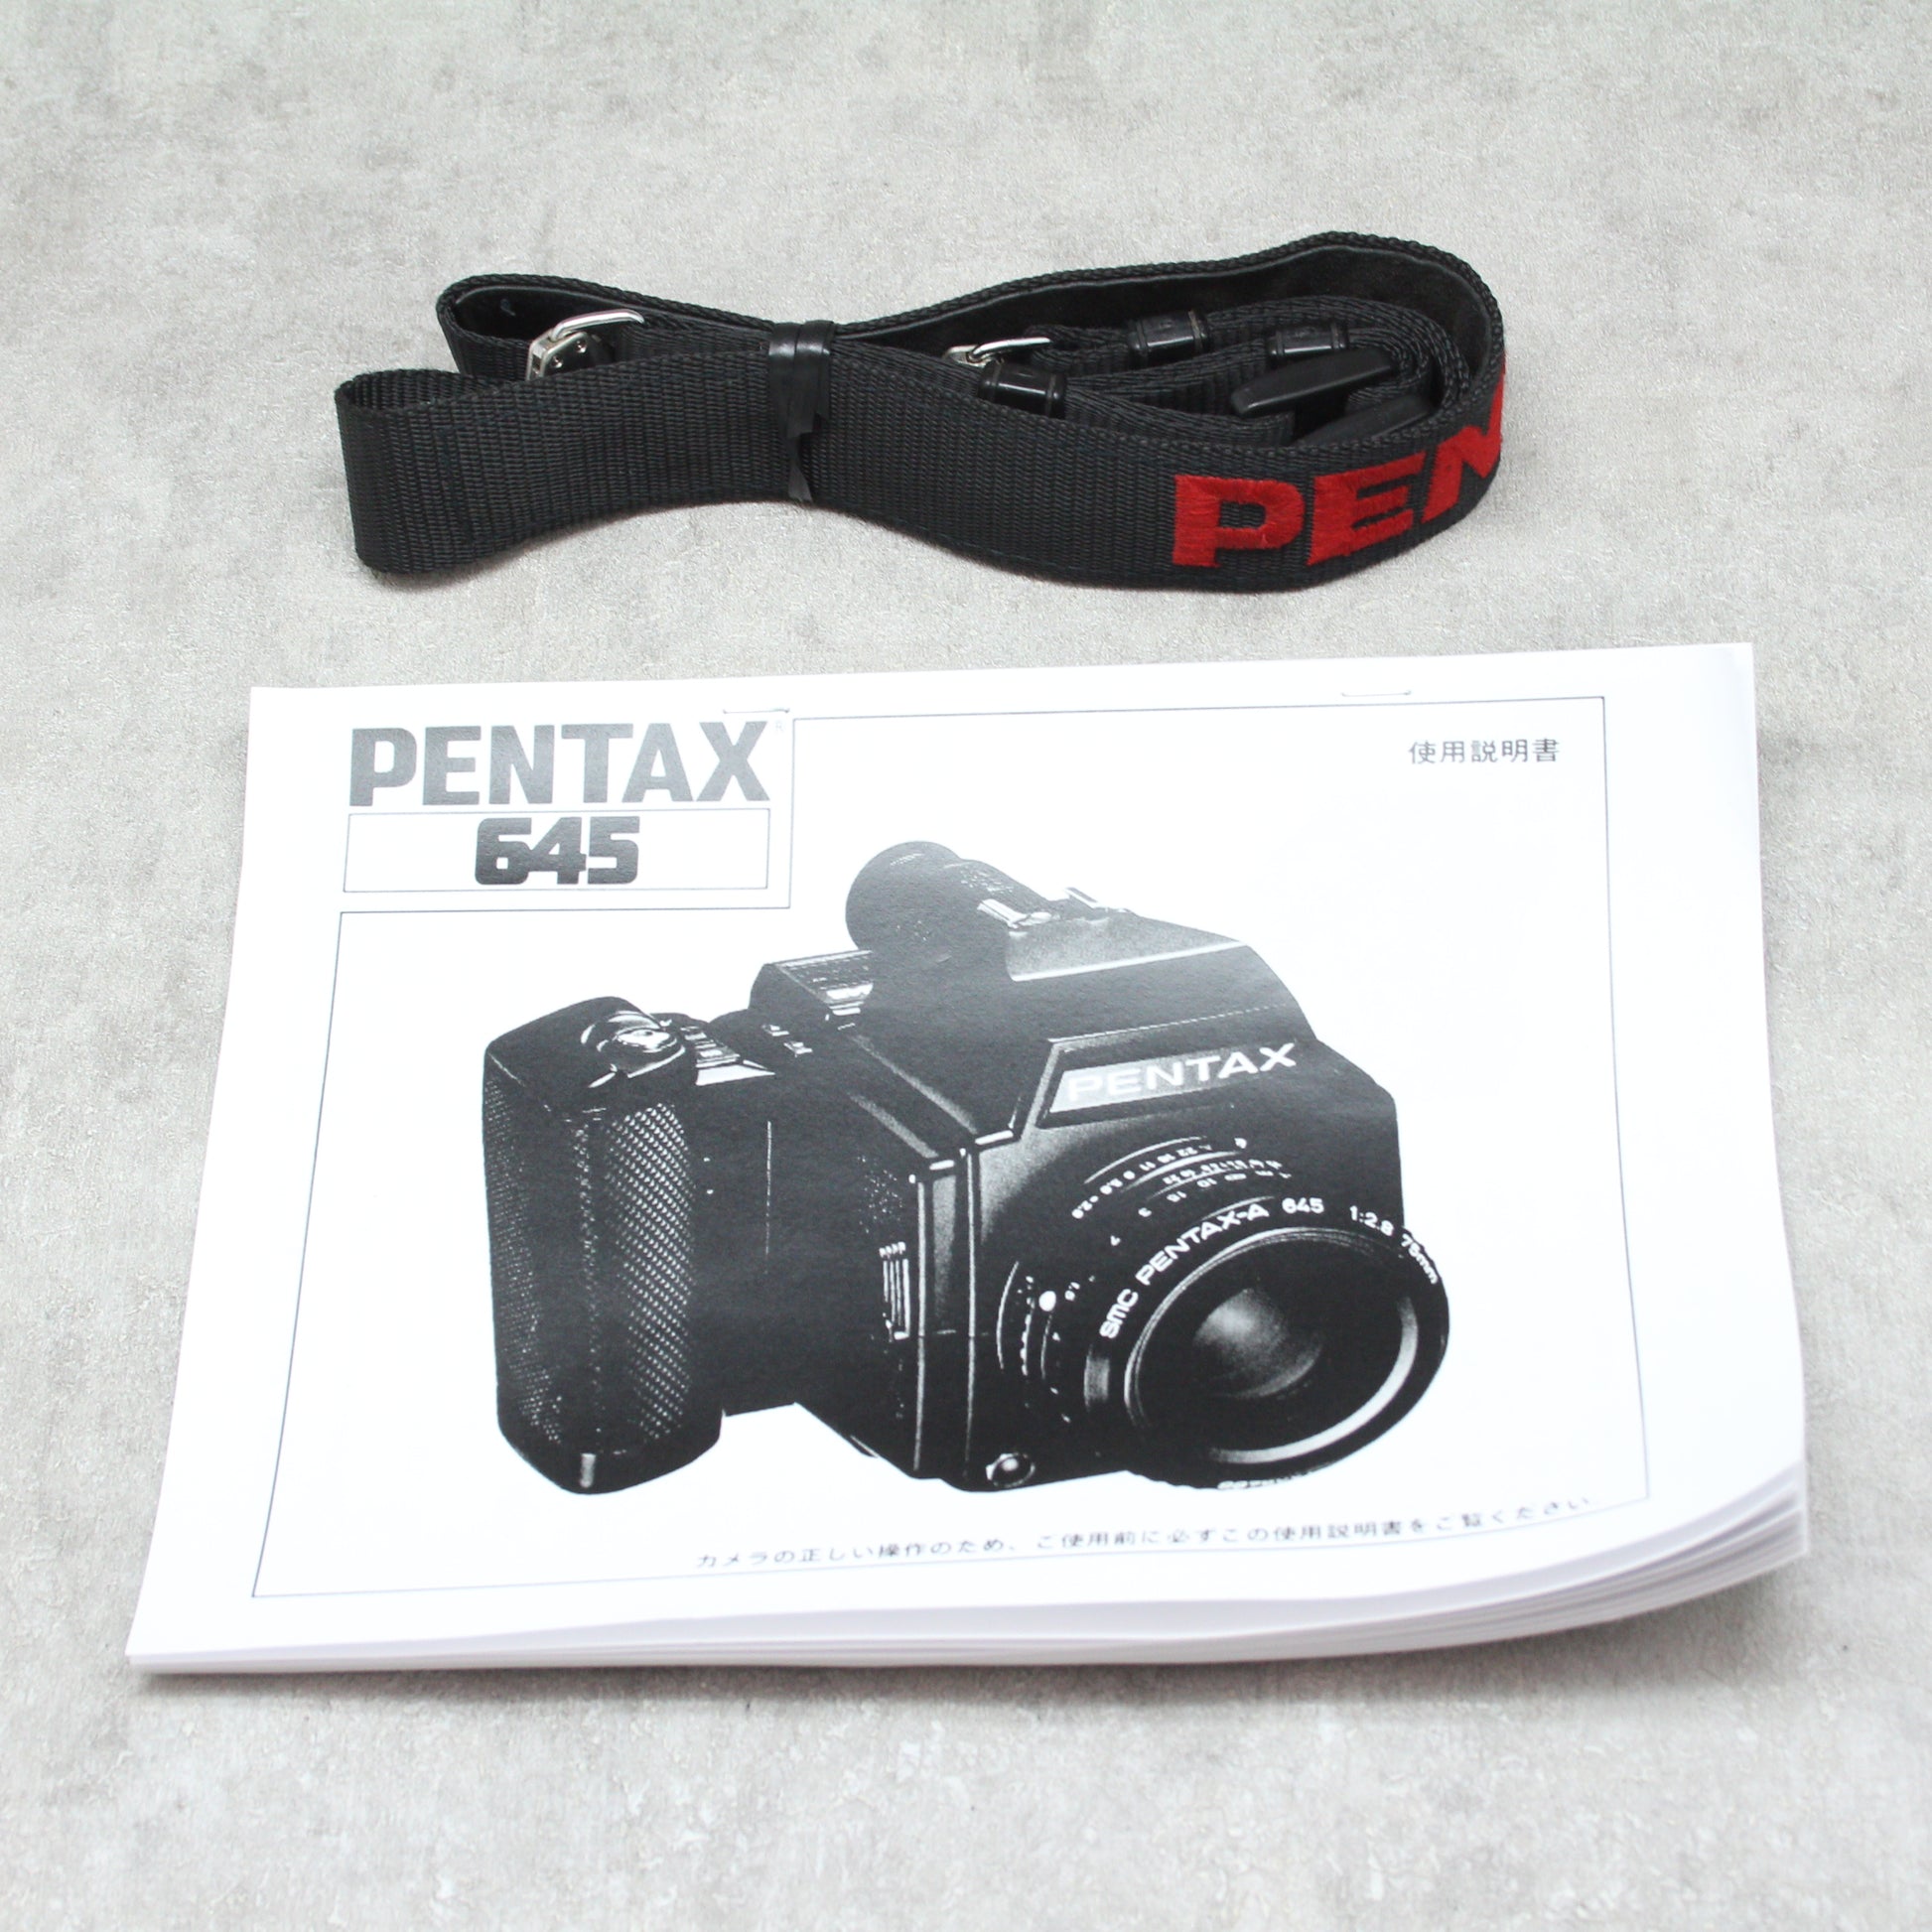 【専用枠】PENTAX645 75mm f2.8